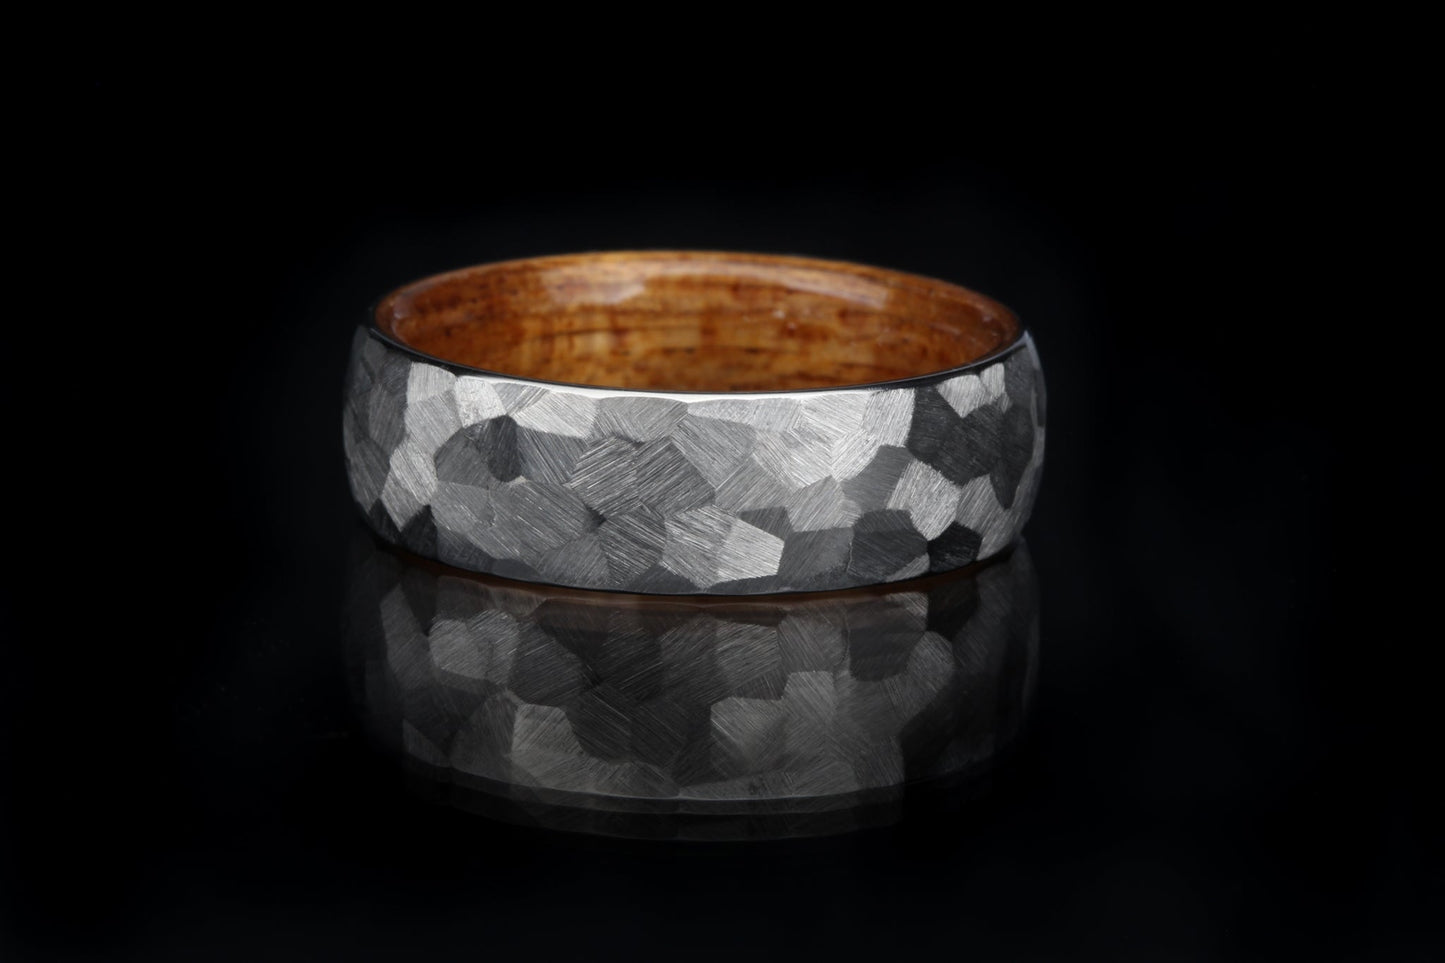 Custom-Built "Boseman" Ti + Wood Ring Rings 